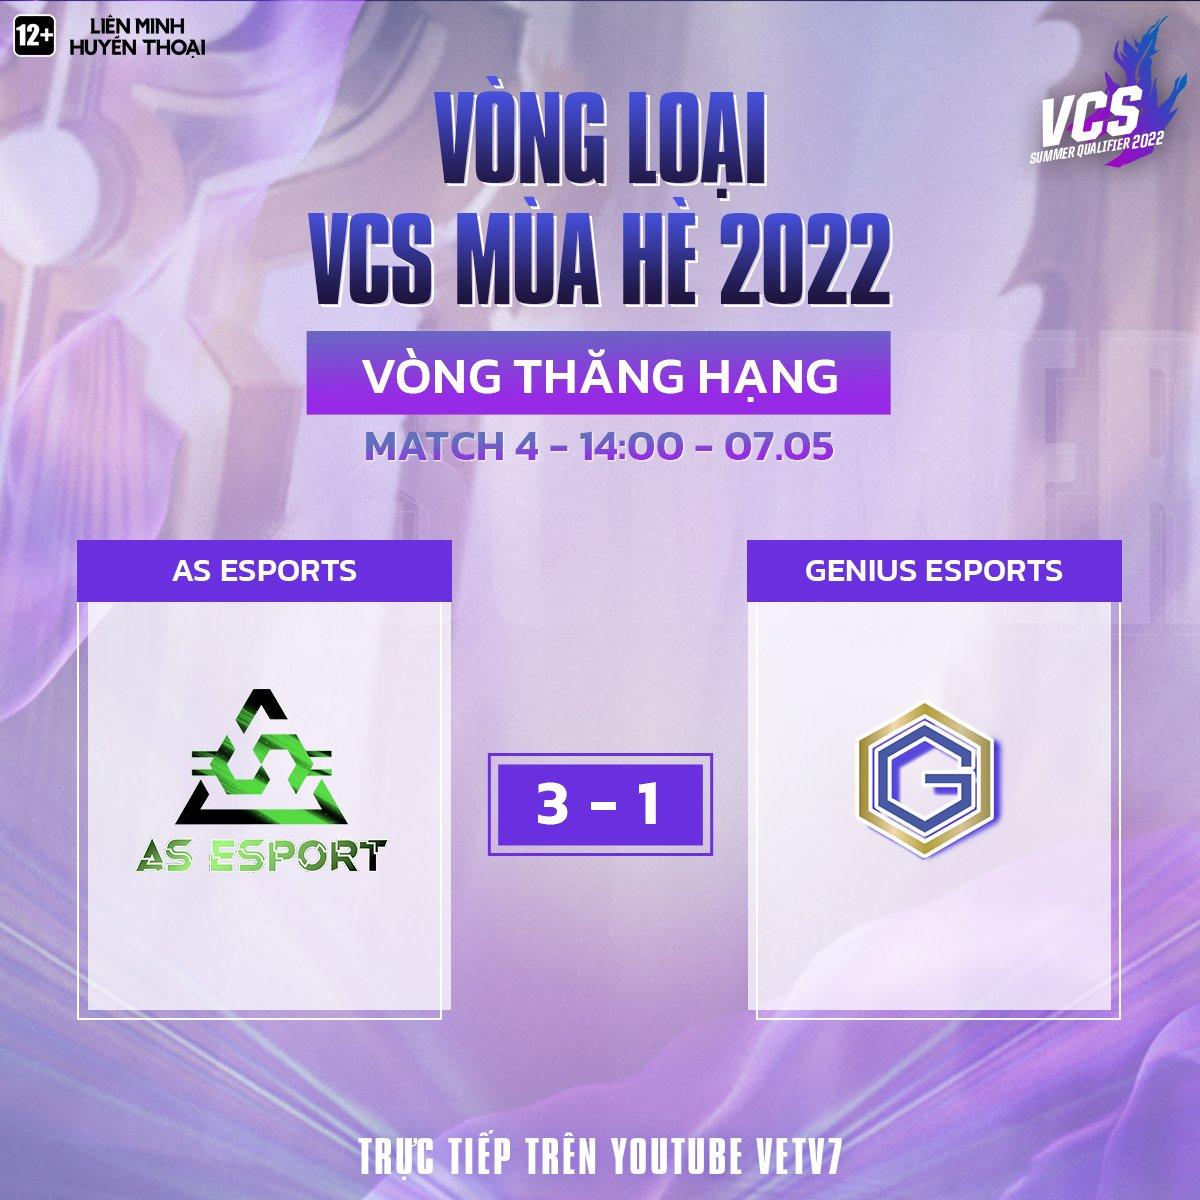 Đánh bại Genius Esports, AS Esports trở thành đội tuyển thứ 7 có tên tại VCS Mùa Hè 2022